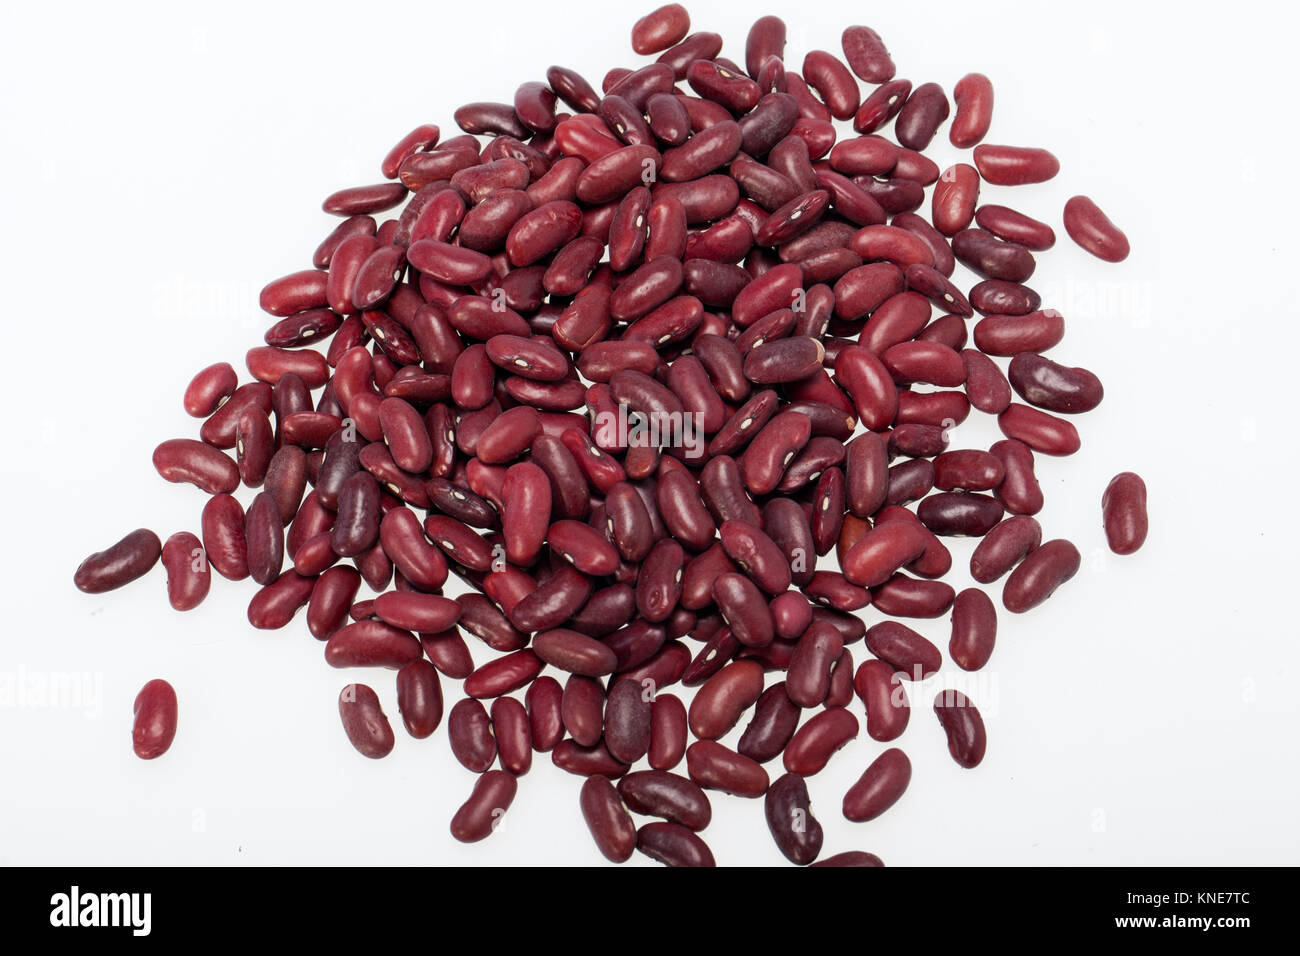 azuki beans on white background Stock Photo